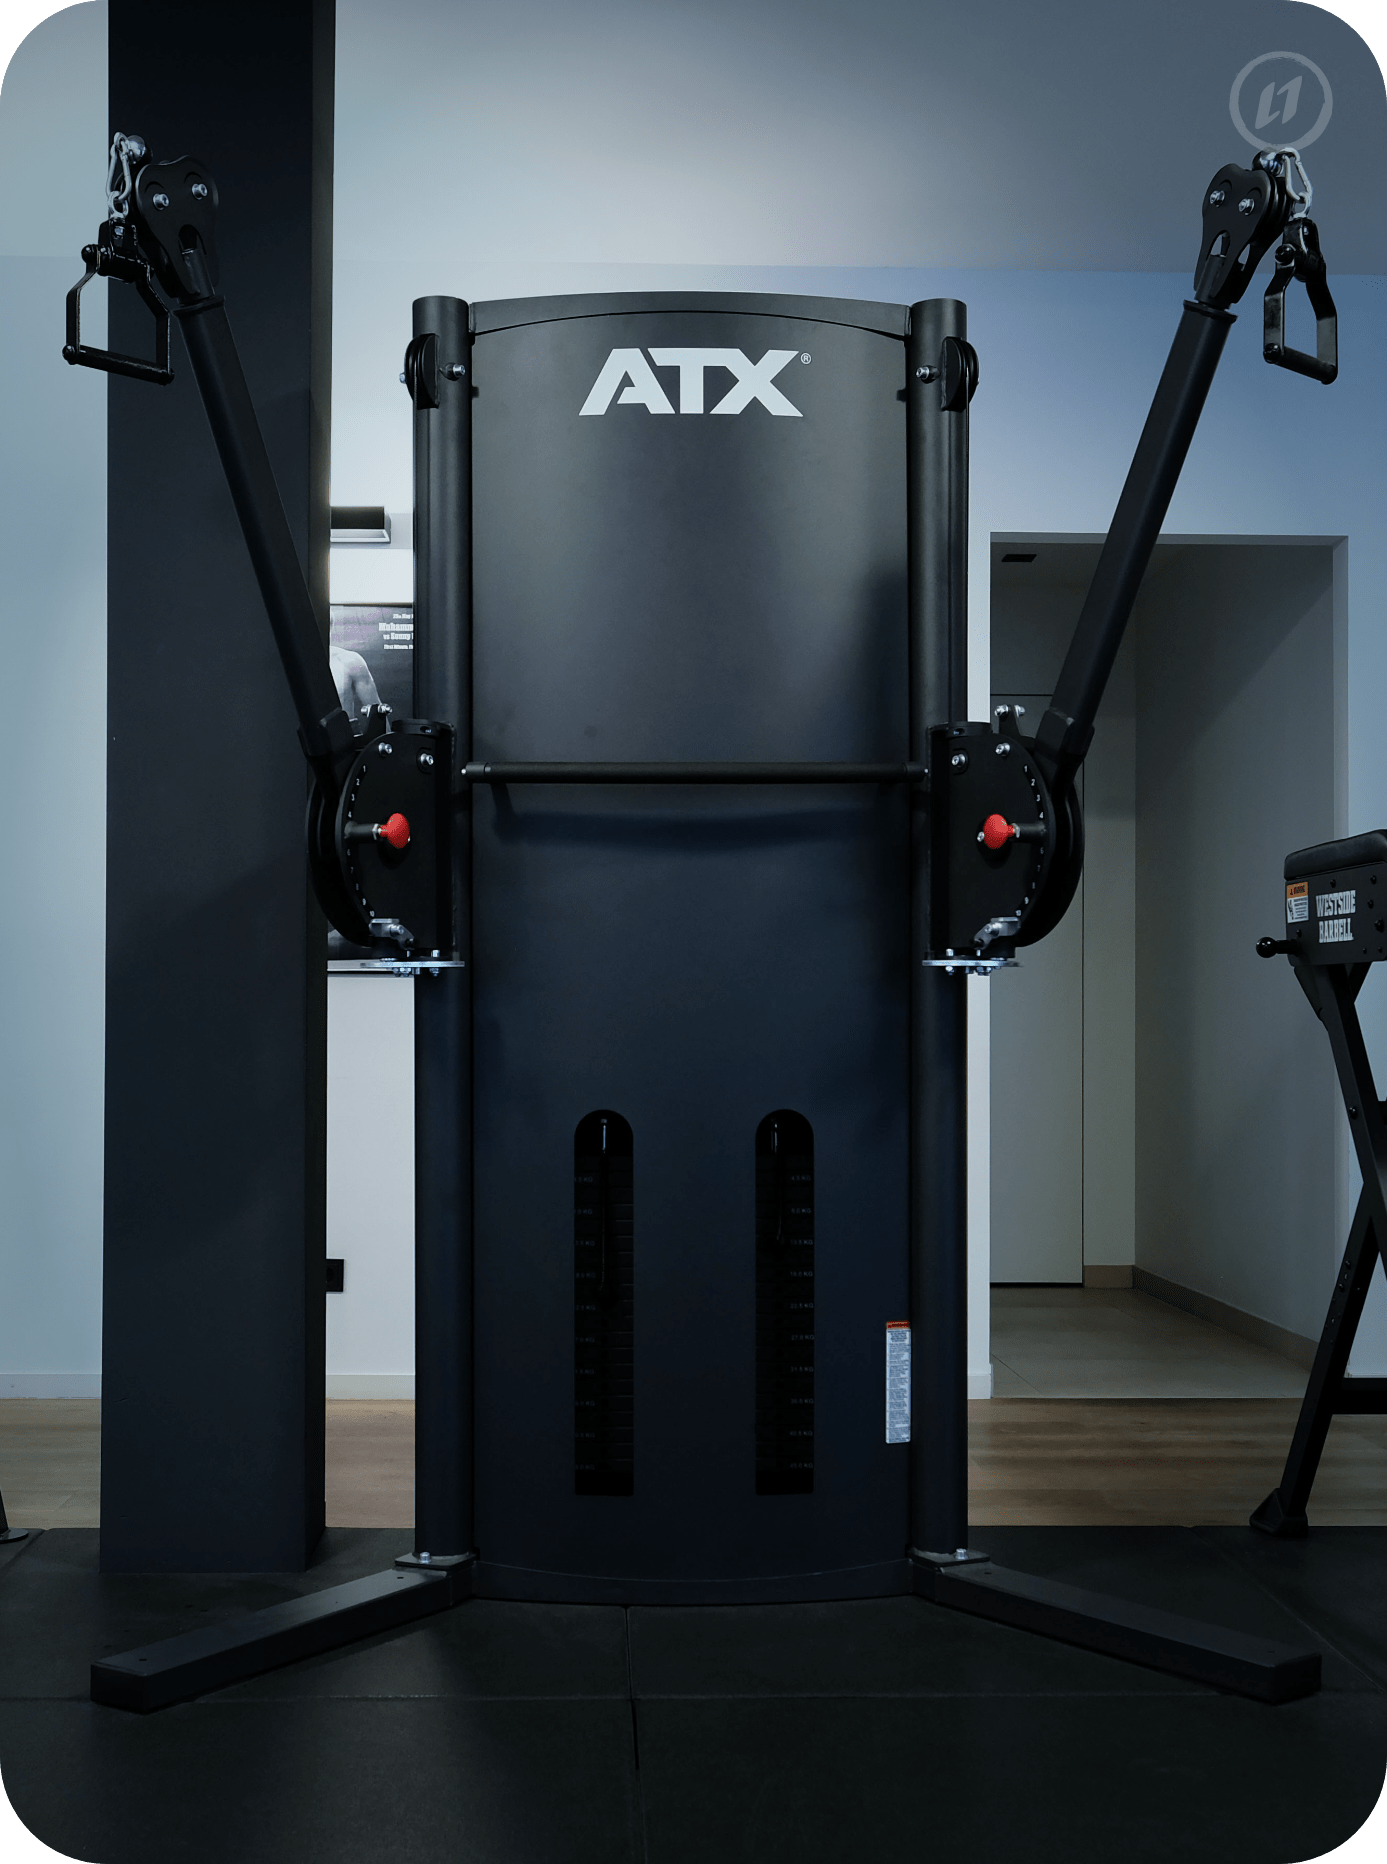 Kabelzugmaschine von ATX im L1FE Personal Training Studio in Frankfurt, individuell ausgerichtet für dein funktionelles Training.